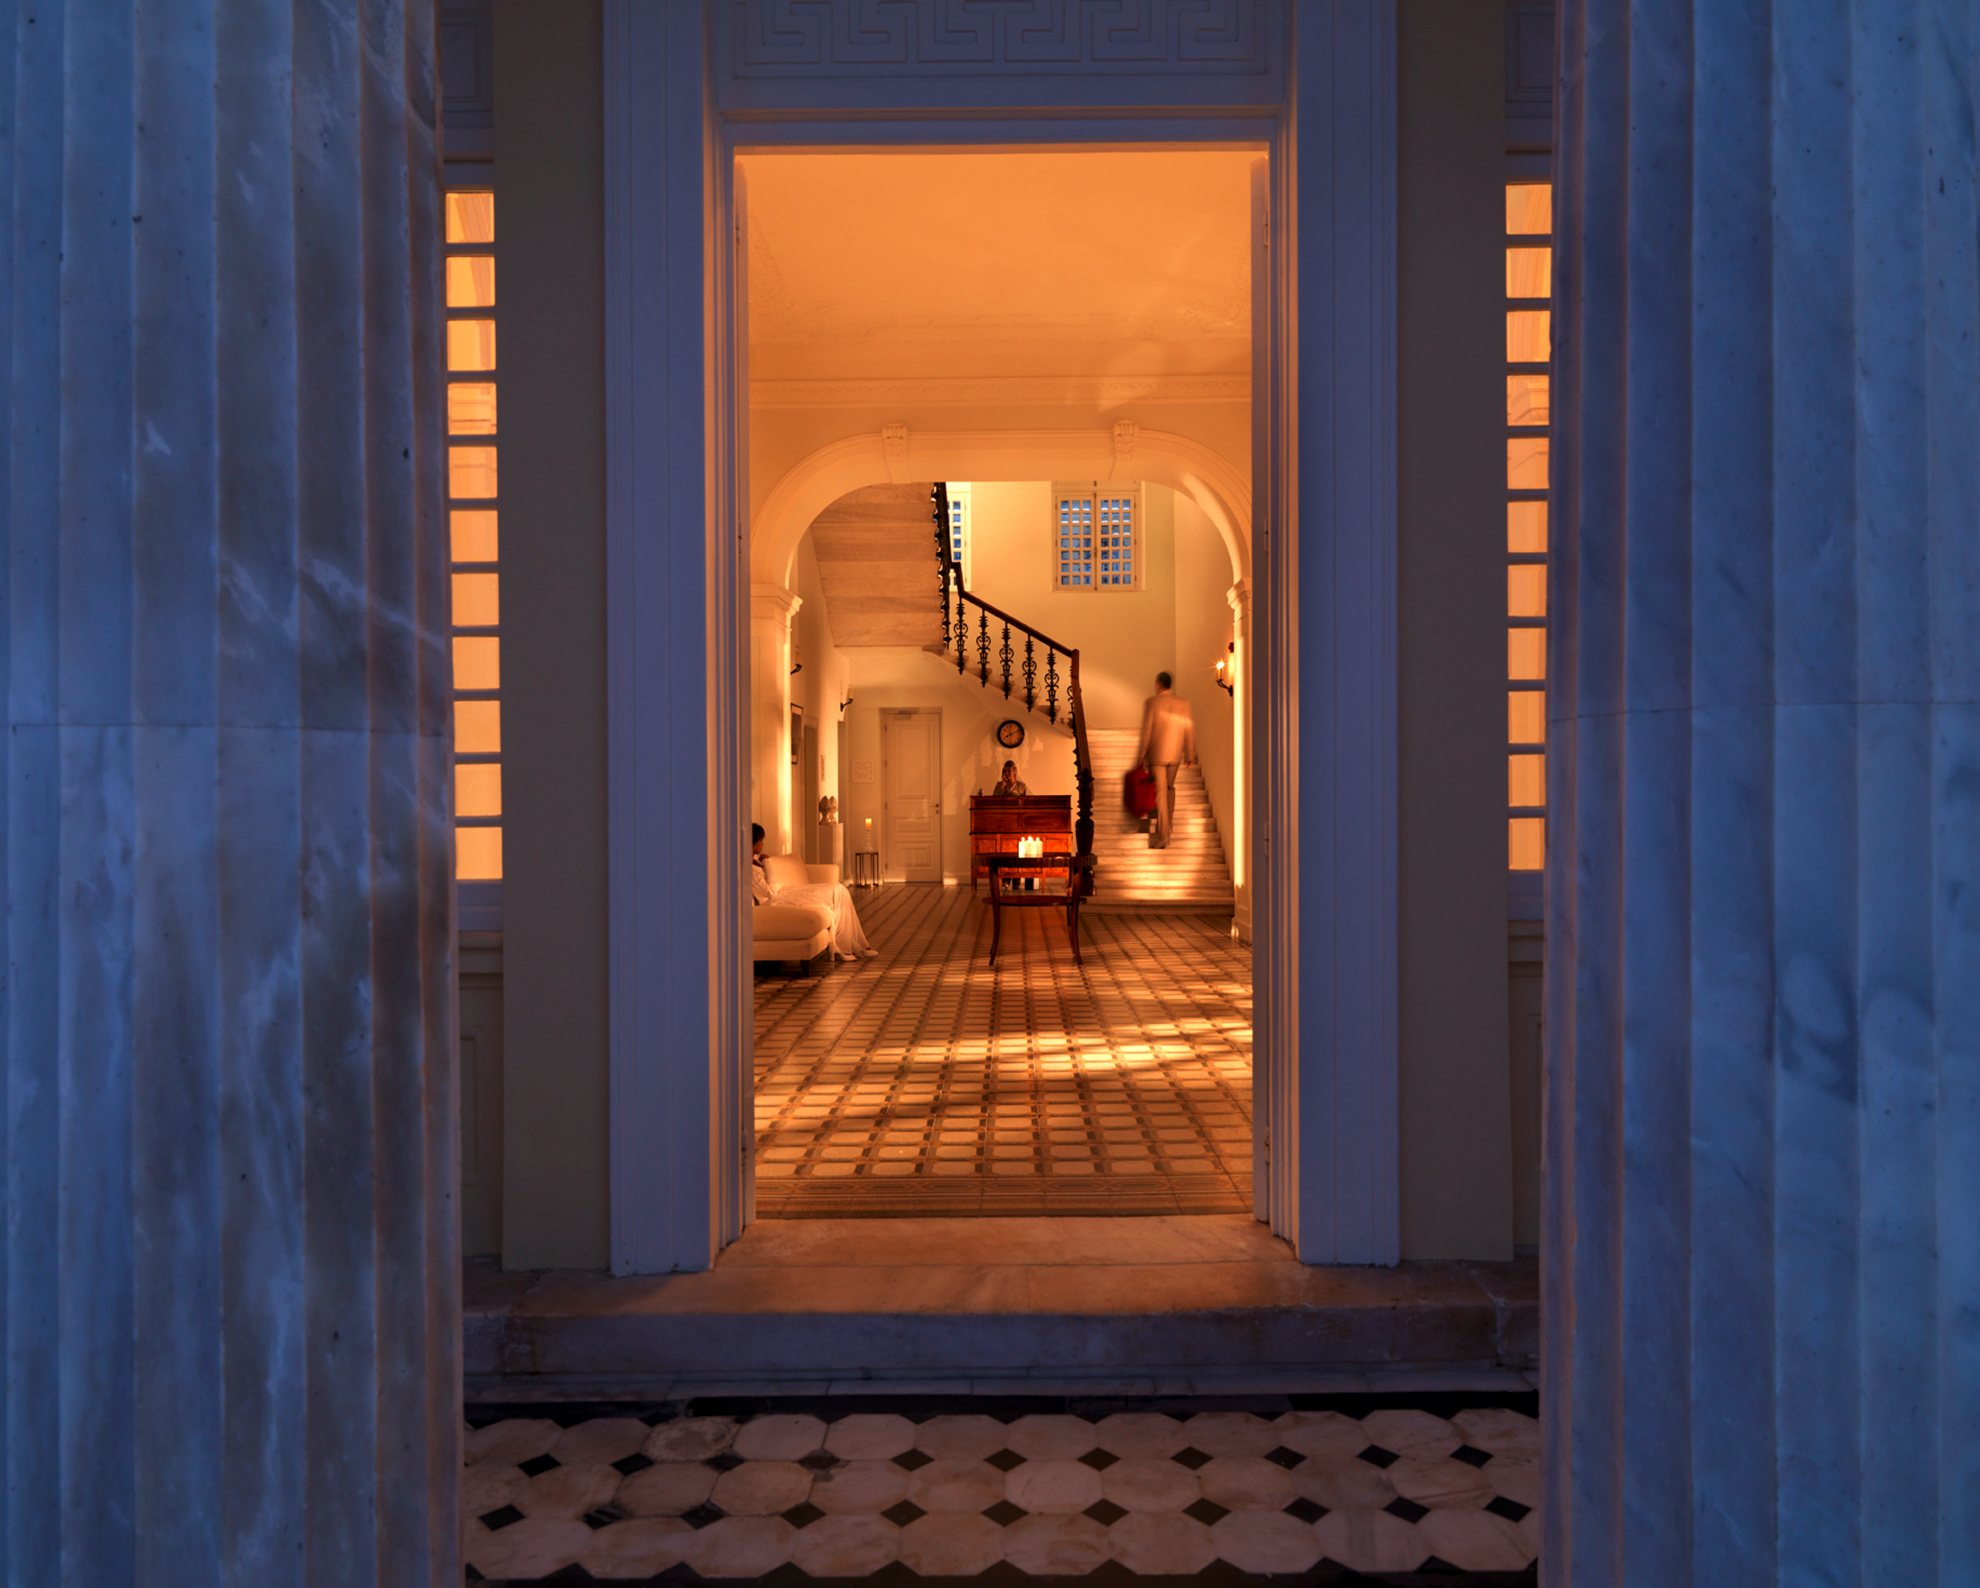 Δωμάτιο με Θέα: Tower Room του Poseidonion Grand Hotel στις Σπέτσες